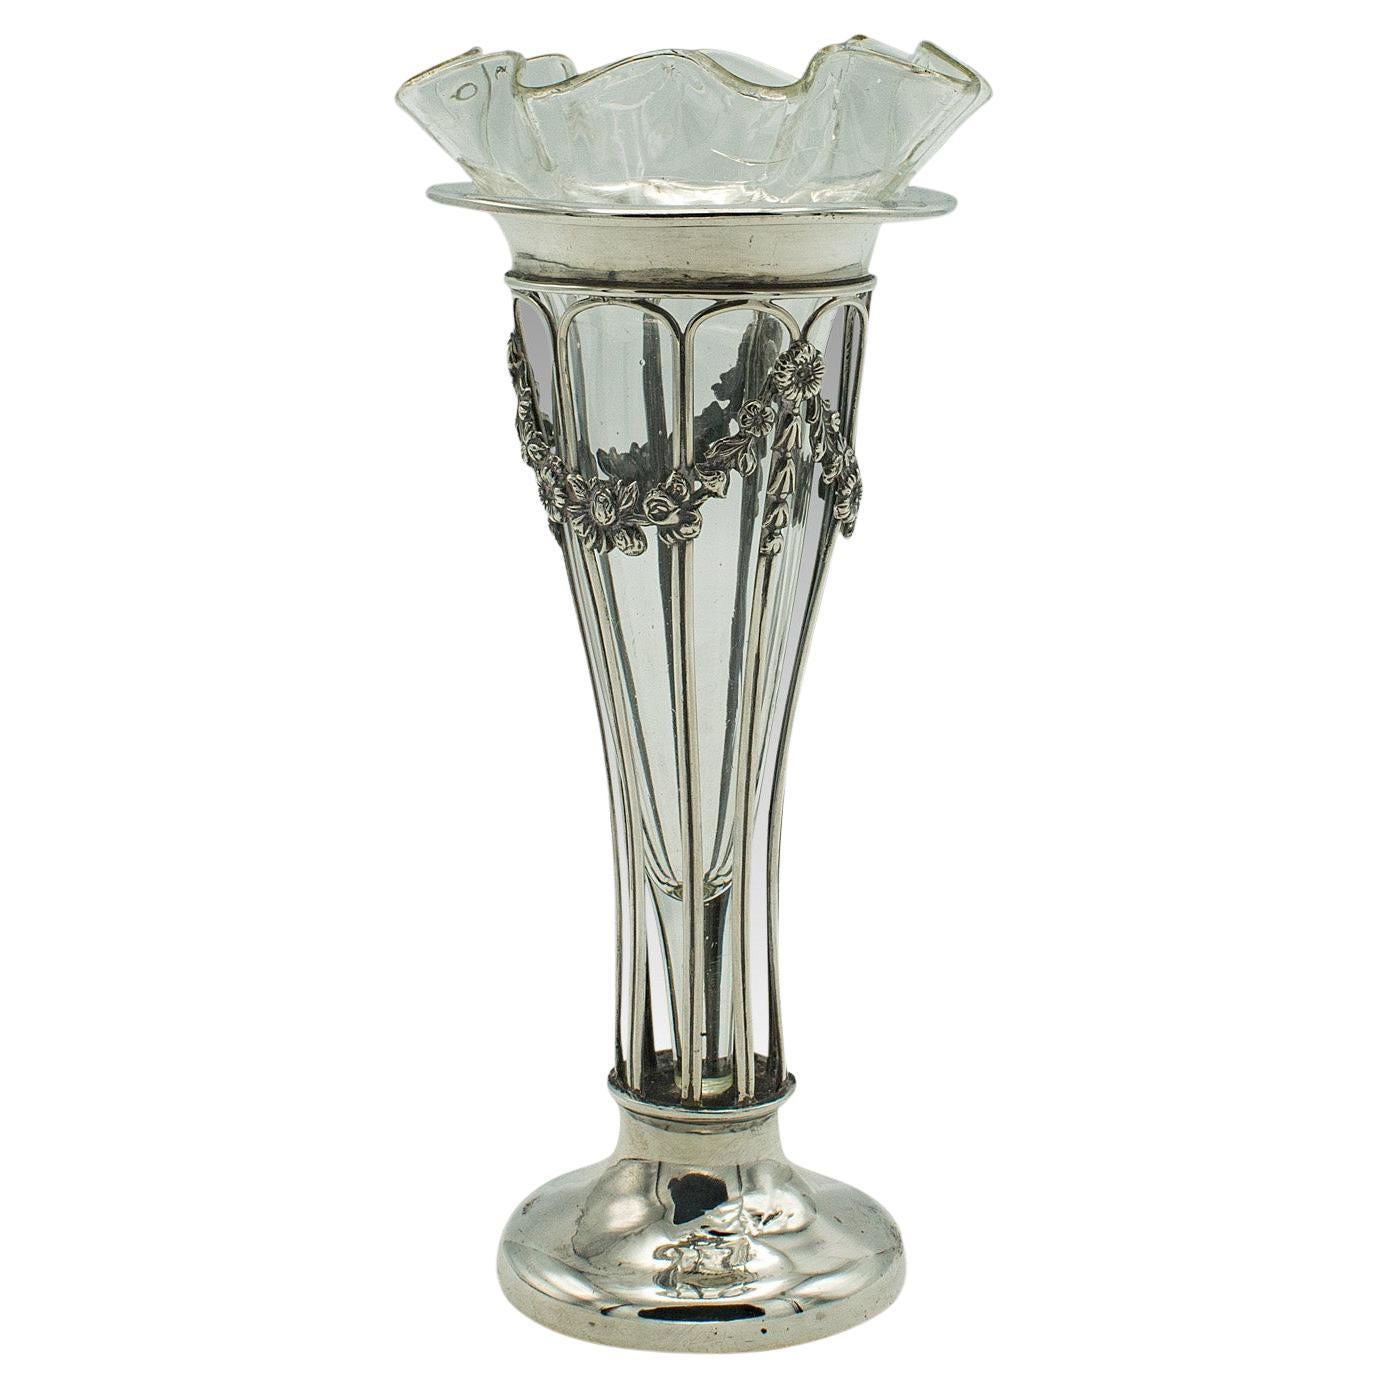 Small Antique Stem Vase, English, Silver, Glass, Decor, Art Nouveau, Edwardian For Sale